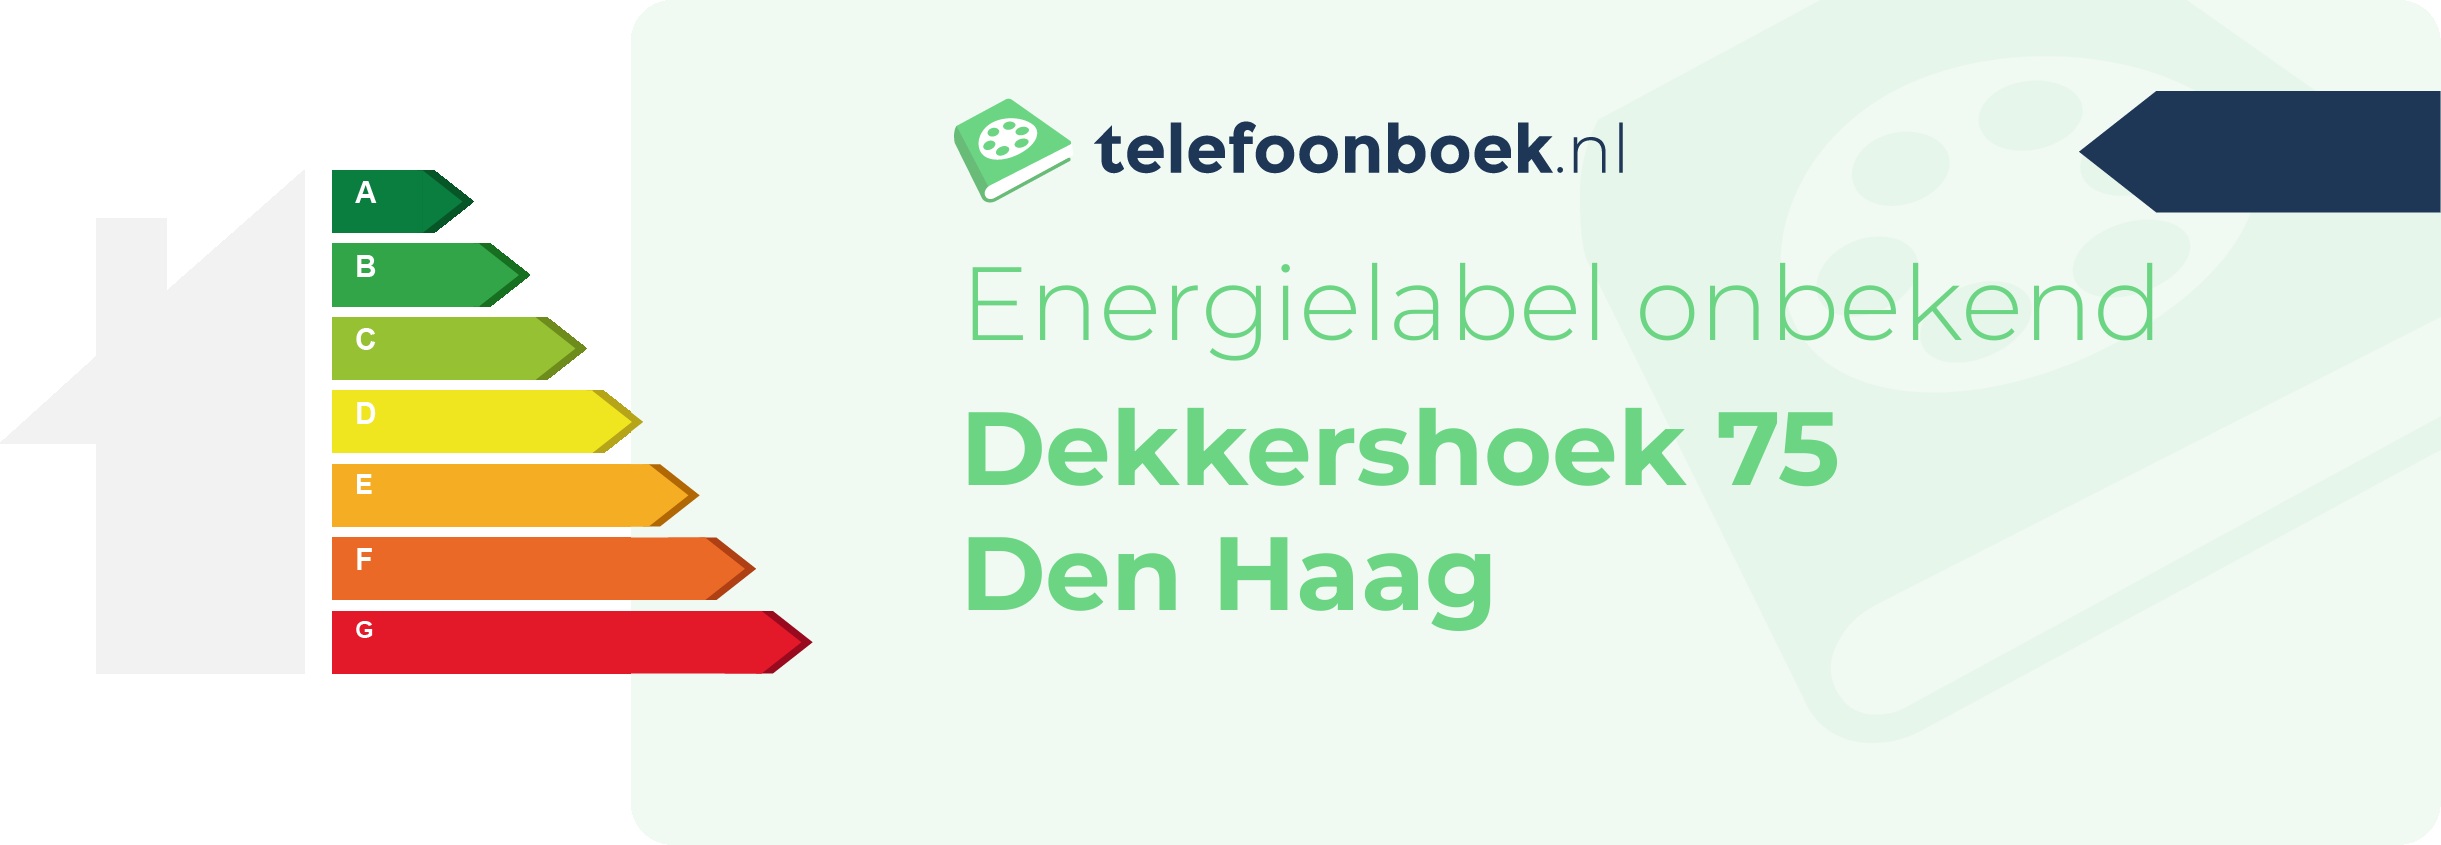 Energielabel Dekkershoek 75 Den Haag